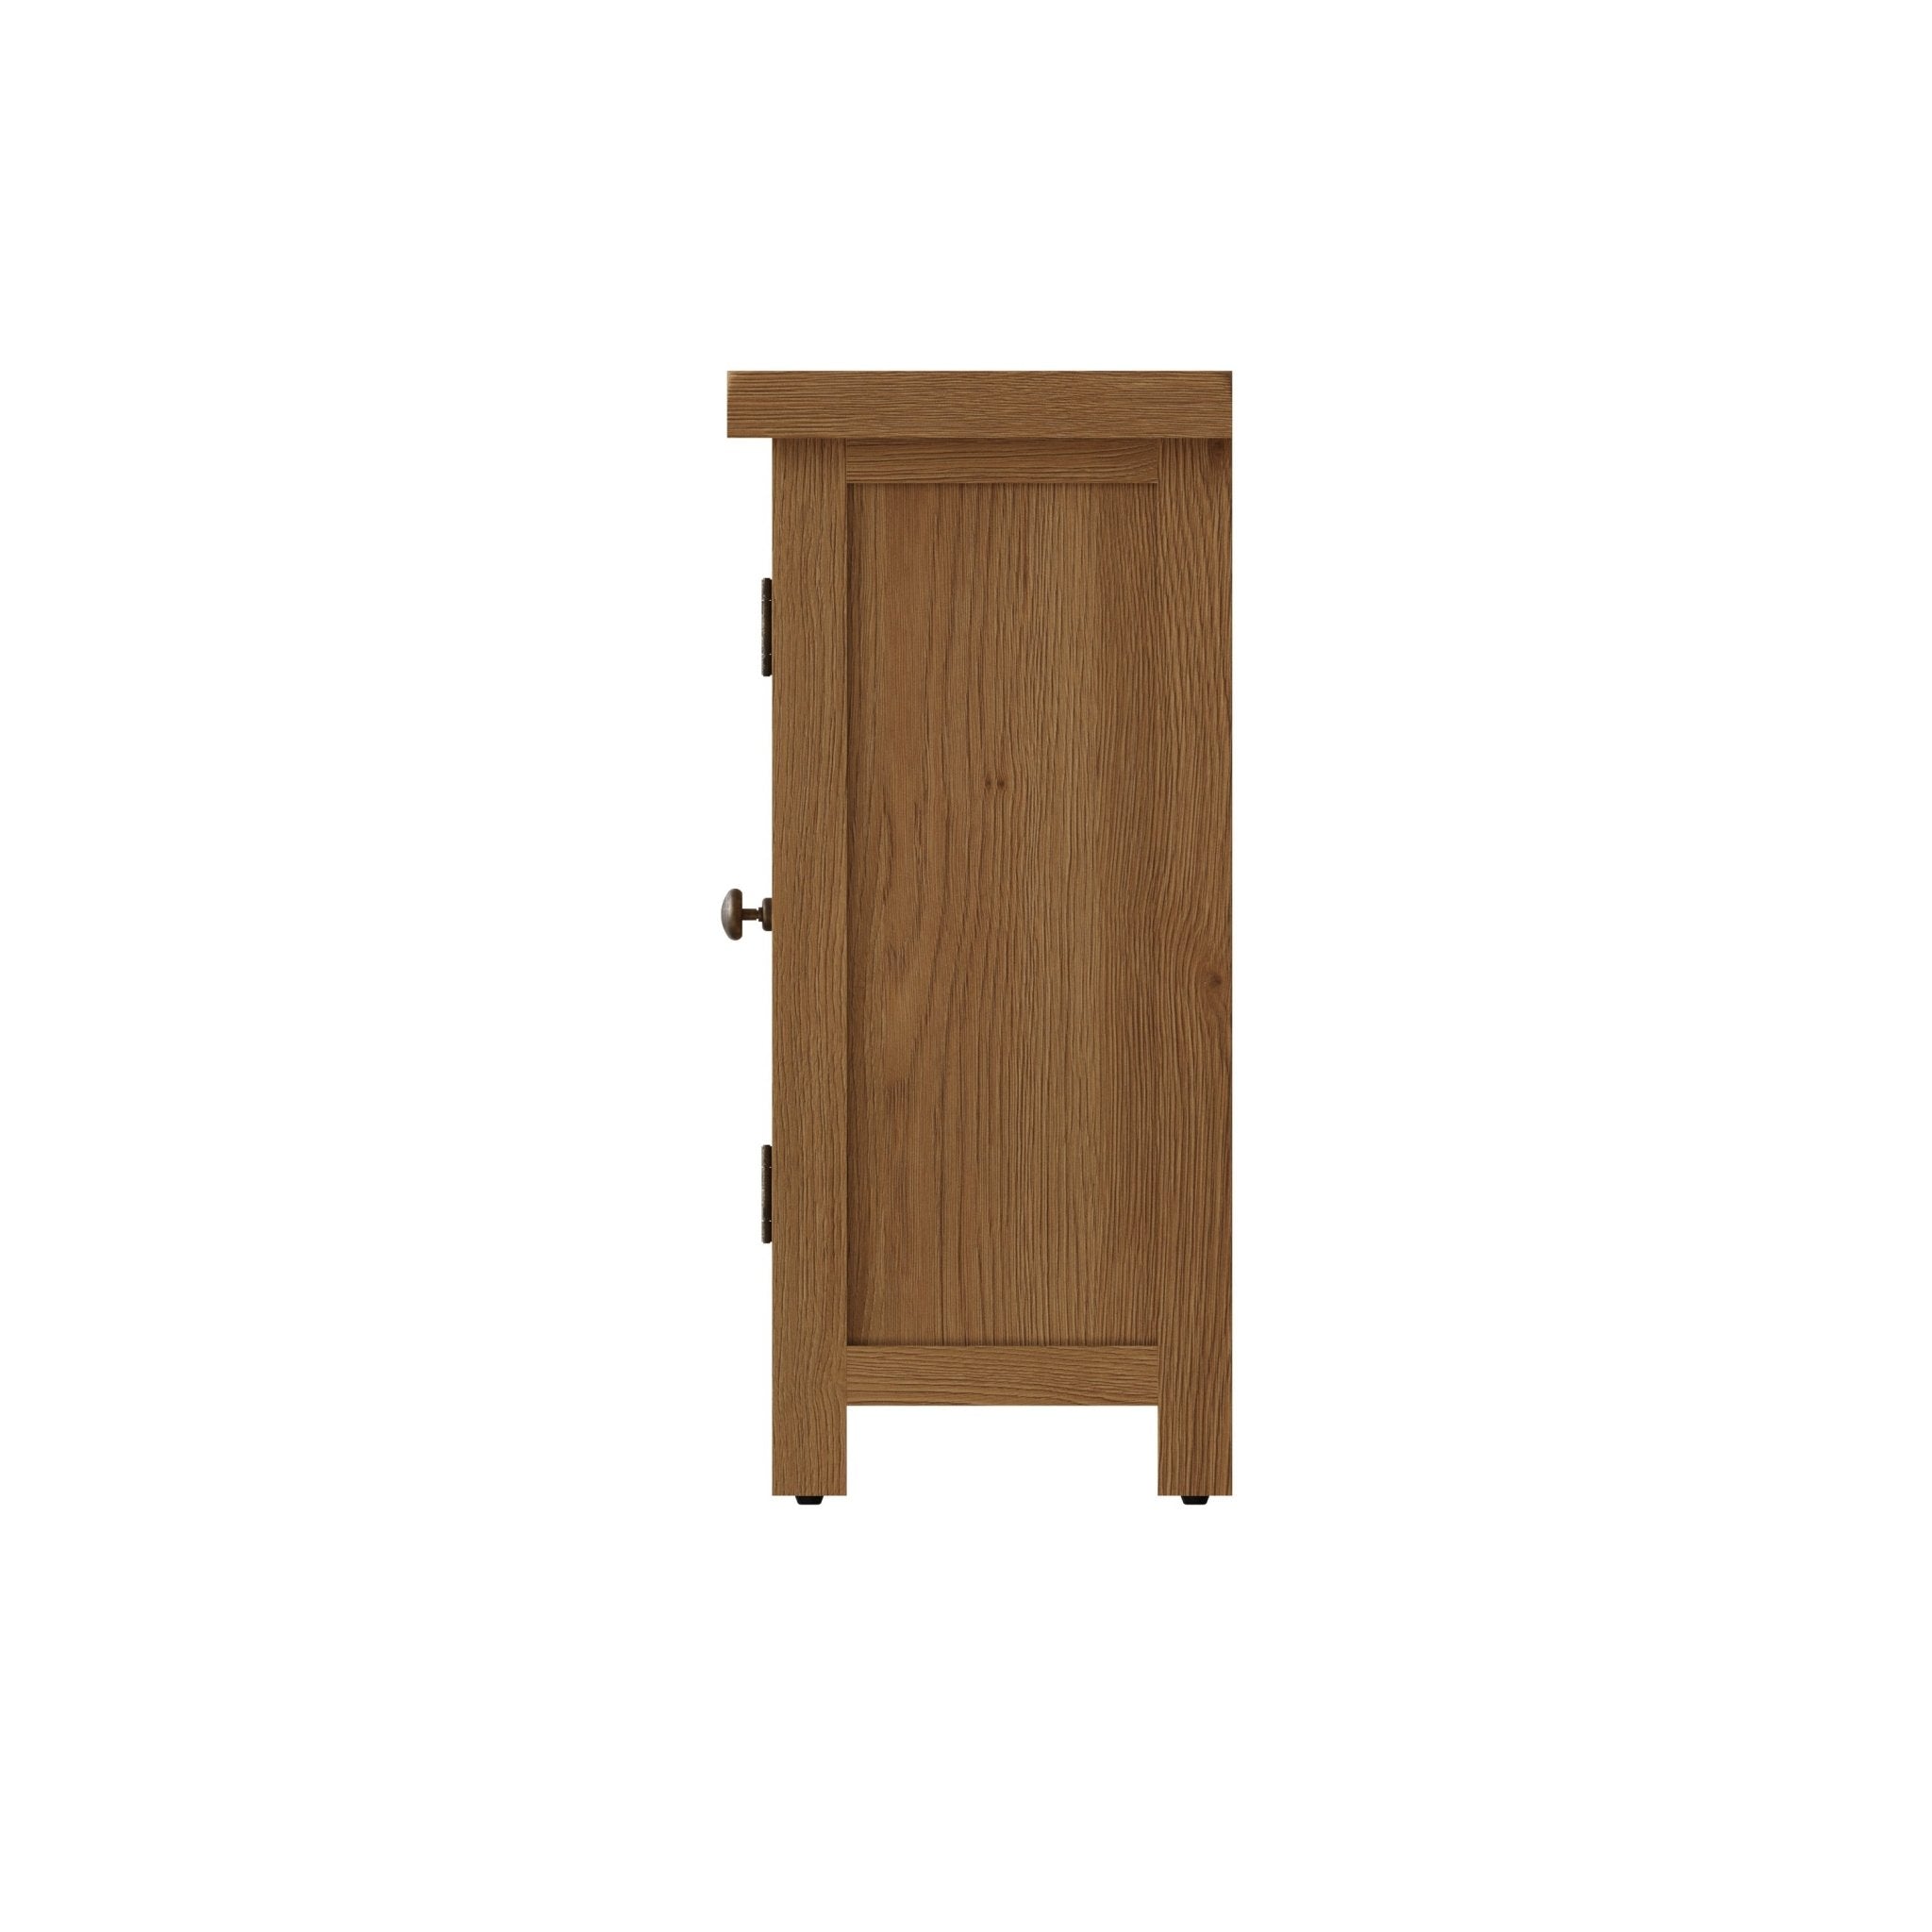 Kirdford Oak 2 Door Cupboard - Duck Barn Interiors